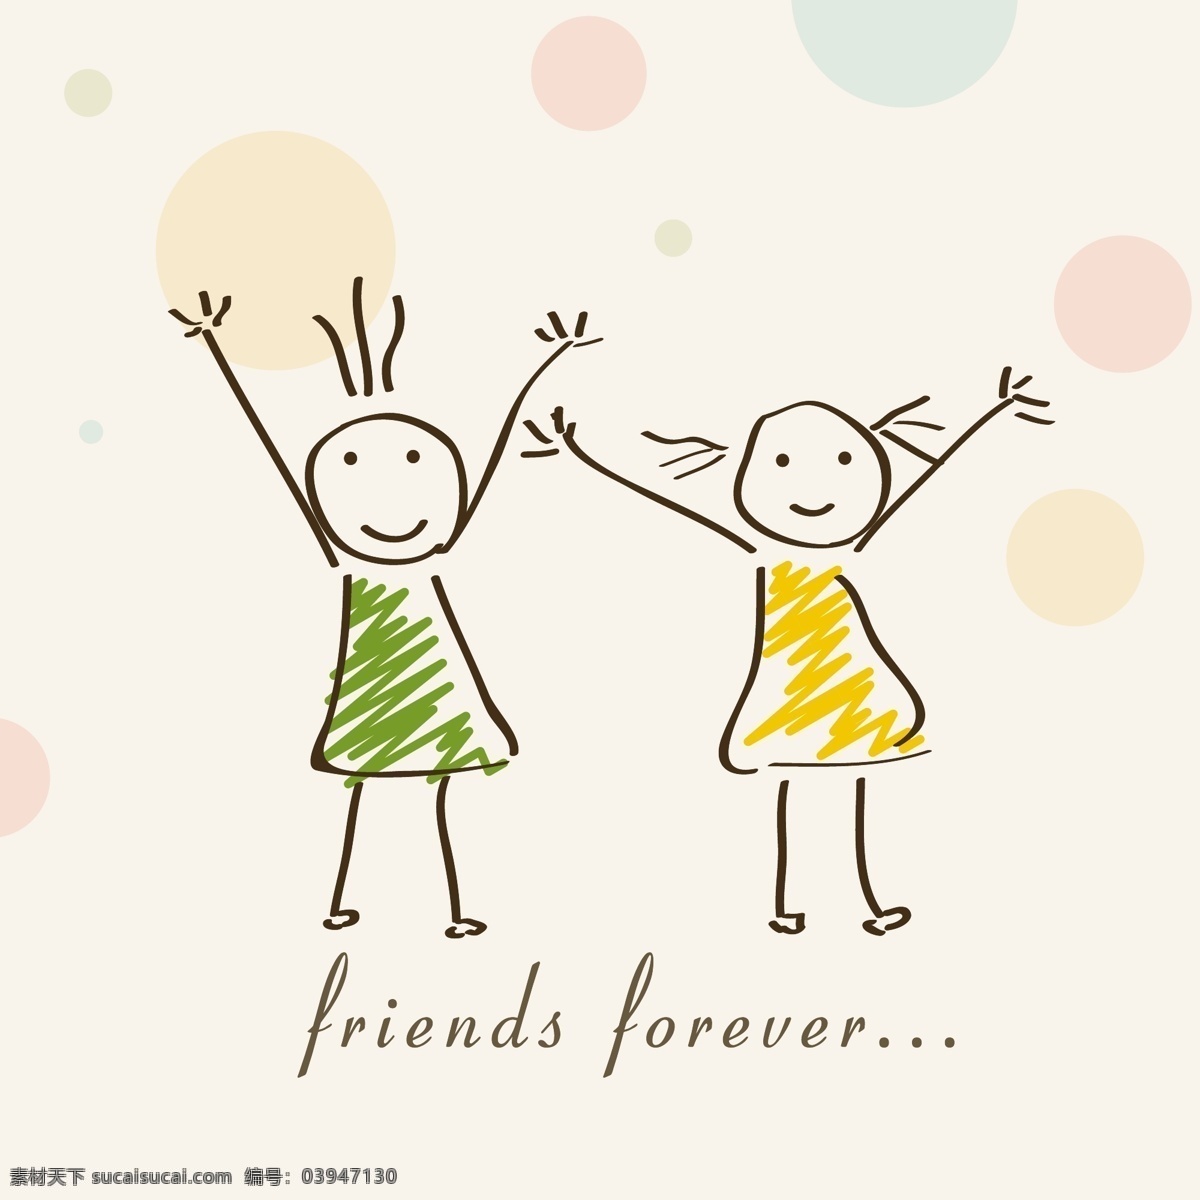 卡通 插画 两个 可爱 女孩 文本 朋友 永远 友谊 节 快乐 矢量图 日常生活